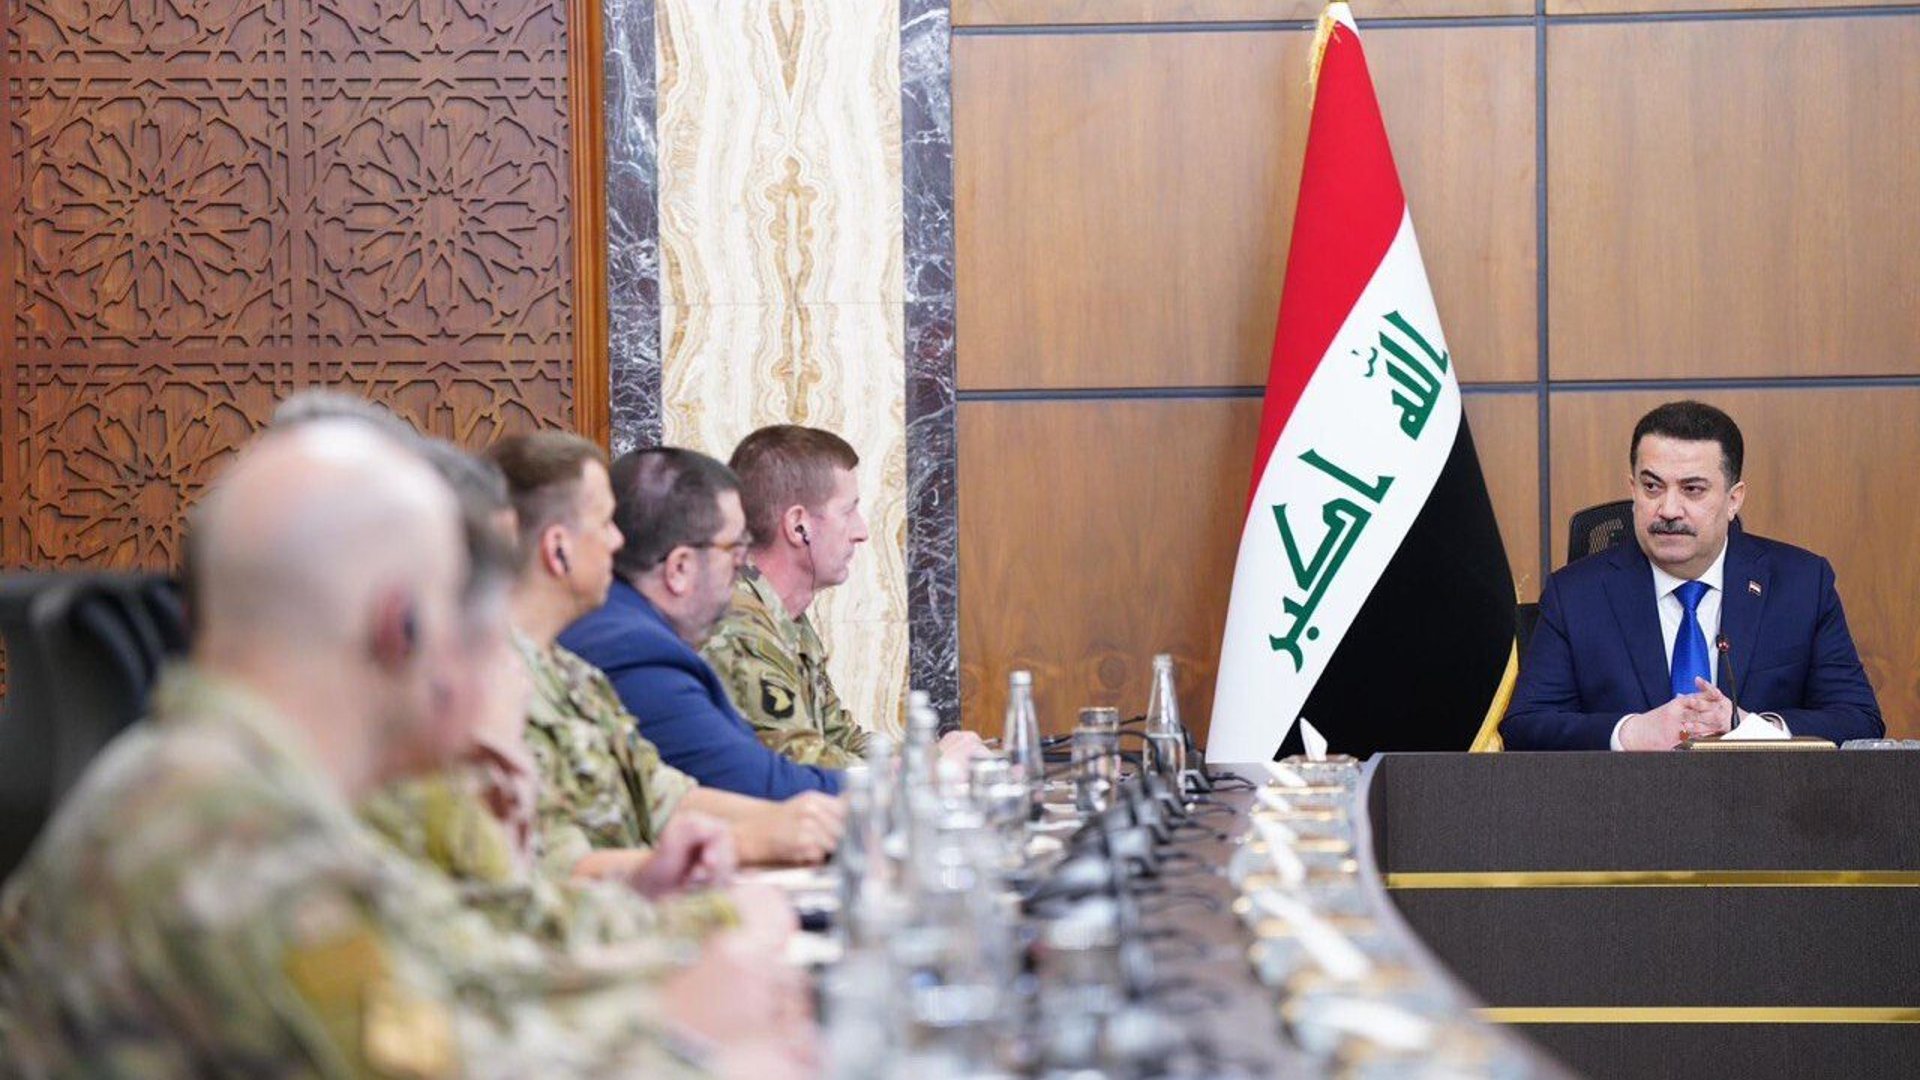 السوداني يلخص مفاوضاته مع واشنطن: تهديد داعش وتطوير العمليات والقدرات العراقية